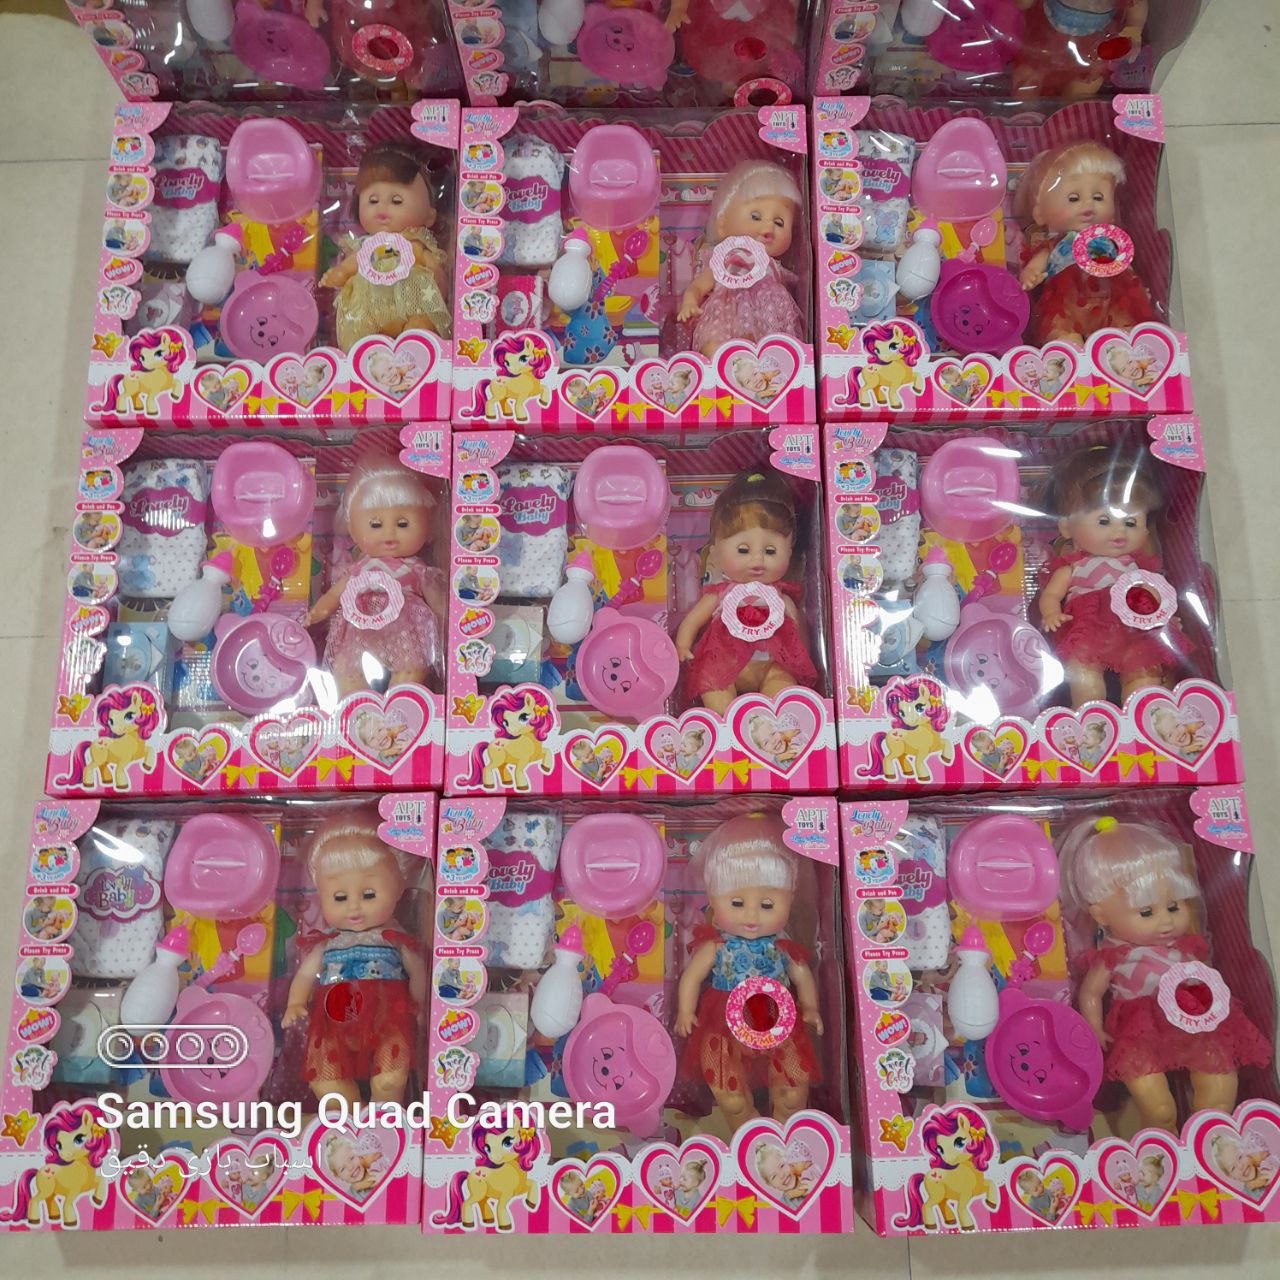   خرید عروسک مای بی بی جیش کن - عروسک پوشکی - طرح دختر - مناسبترین قیمت بازار 